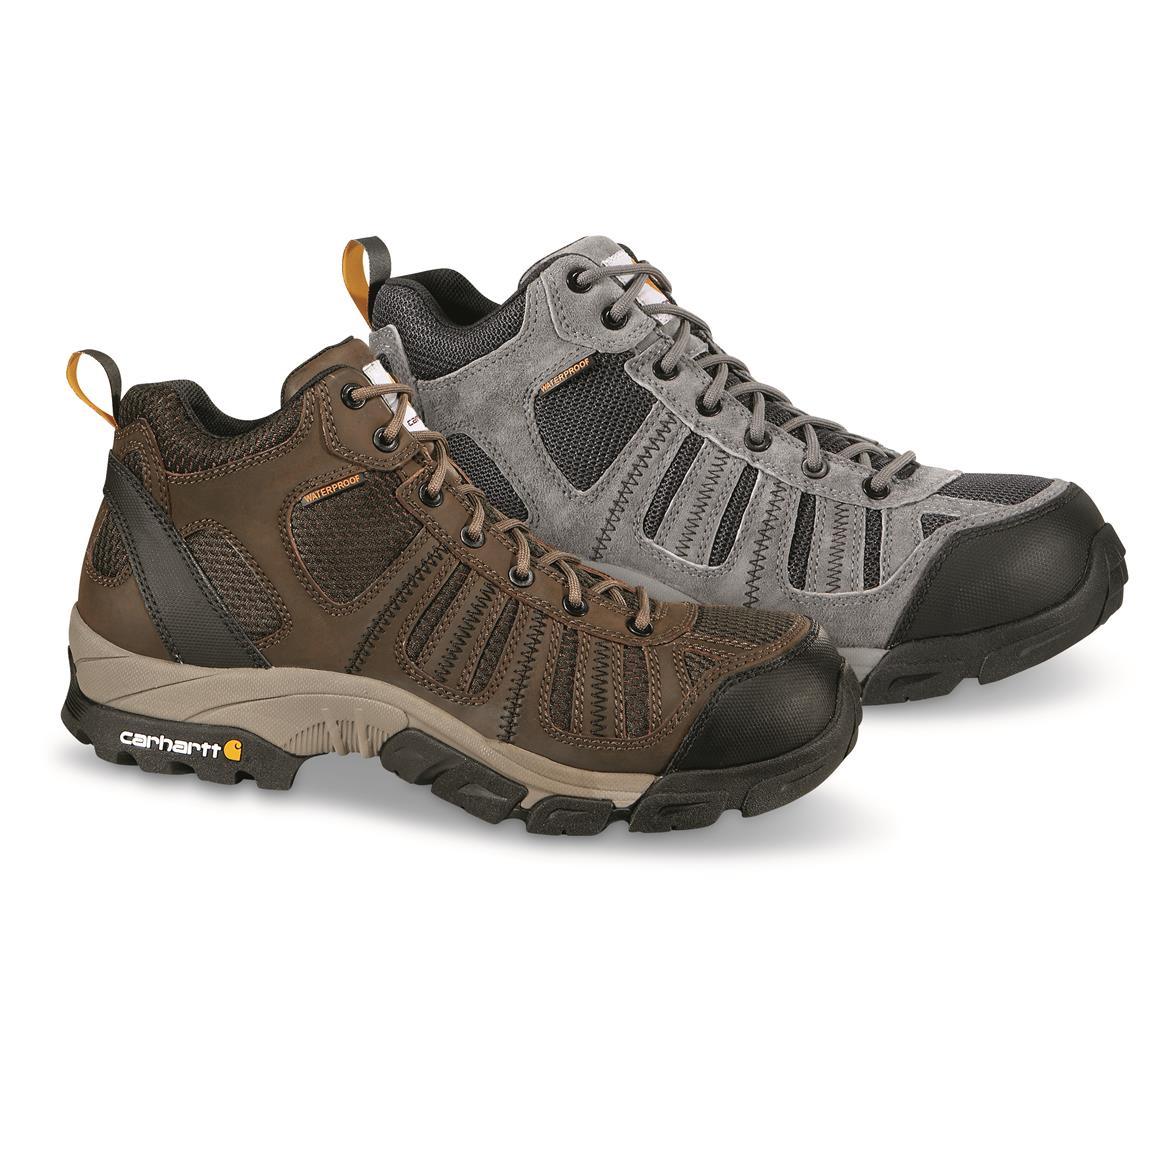 Carhartt Men's Waterproof Lightweight Work Hiker Boots - 689495, Work ...